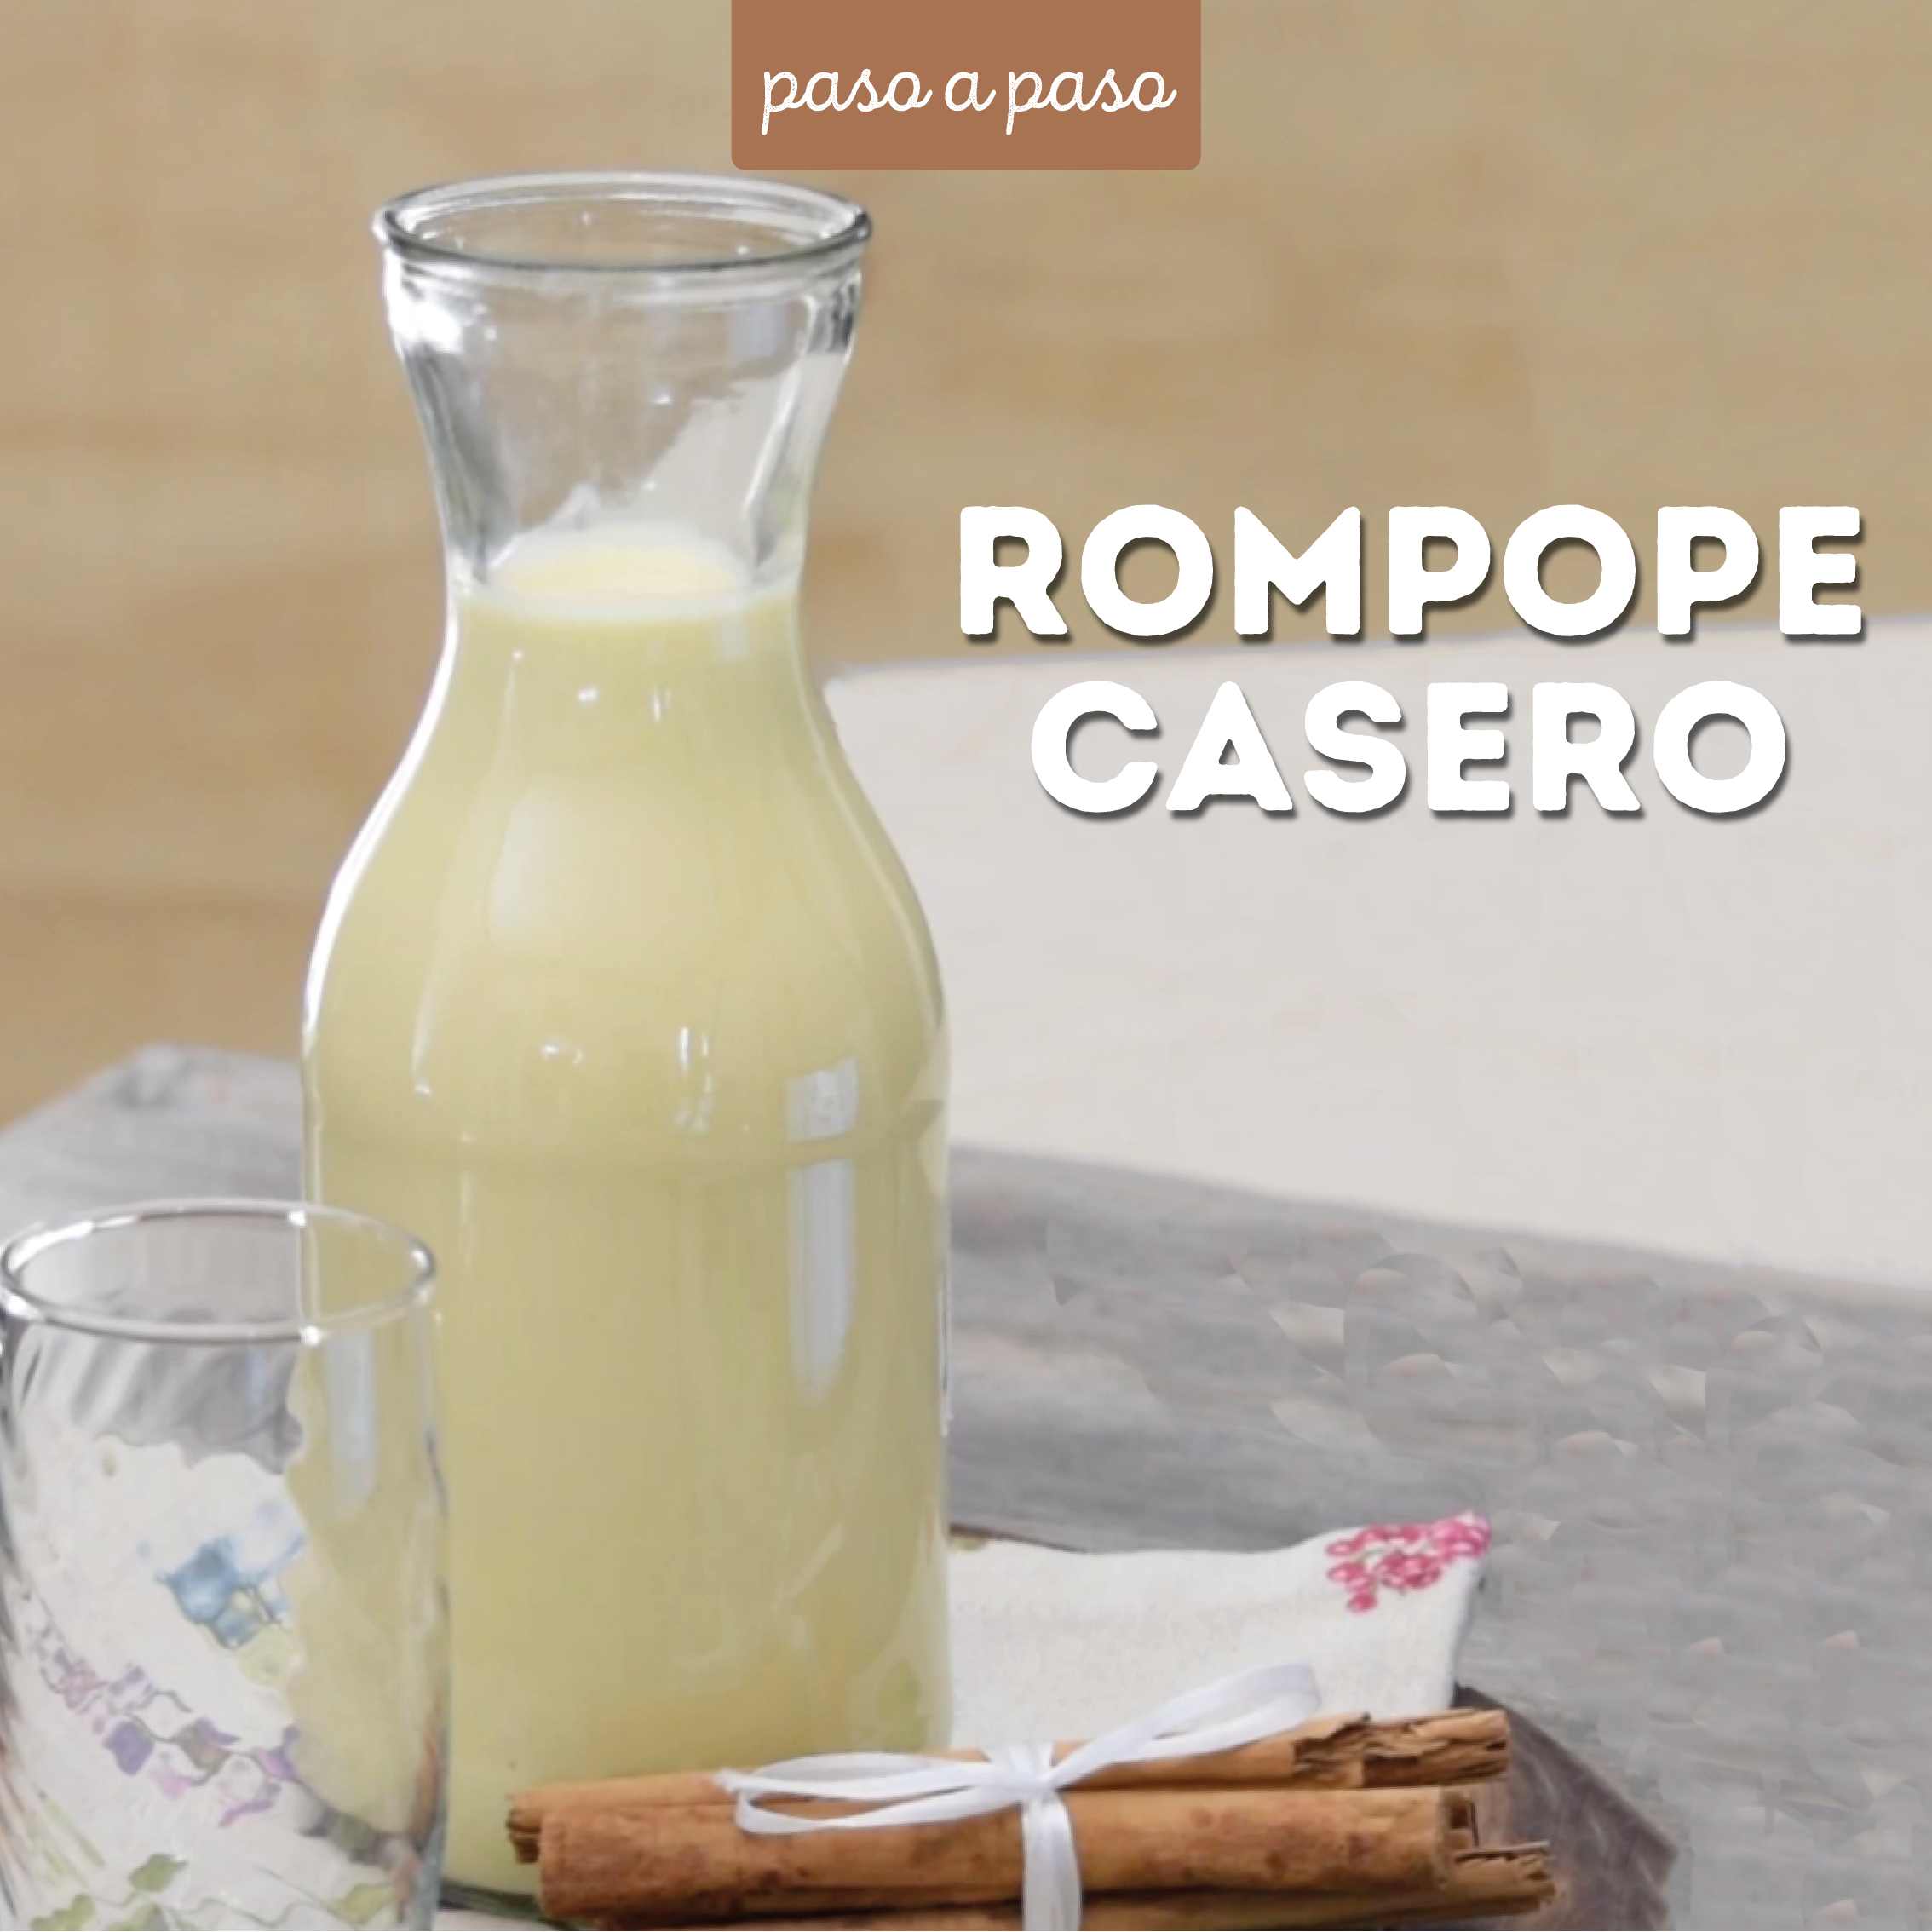 Rompope casero receta completa